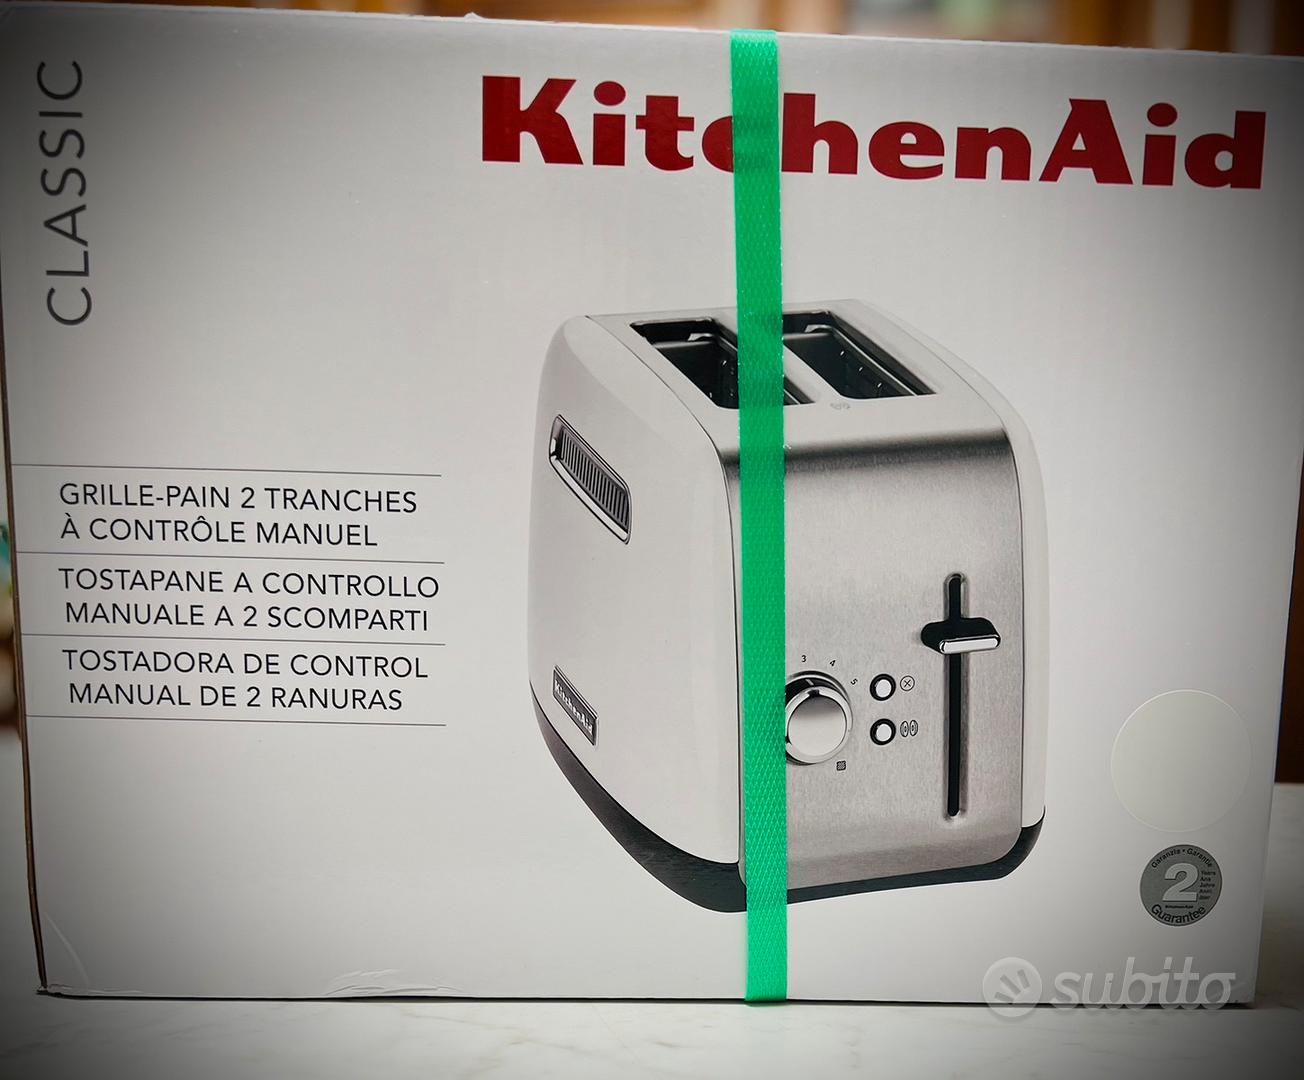 Tostapane KitchenAid - Toaster - Elettrodomestici In vendita a Vicenza